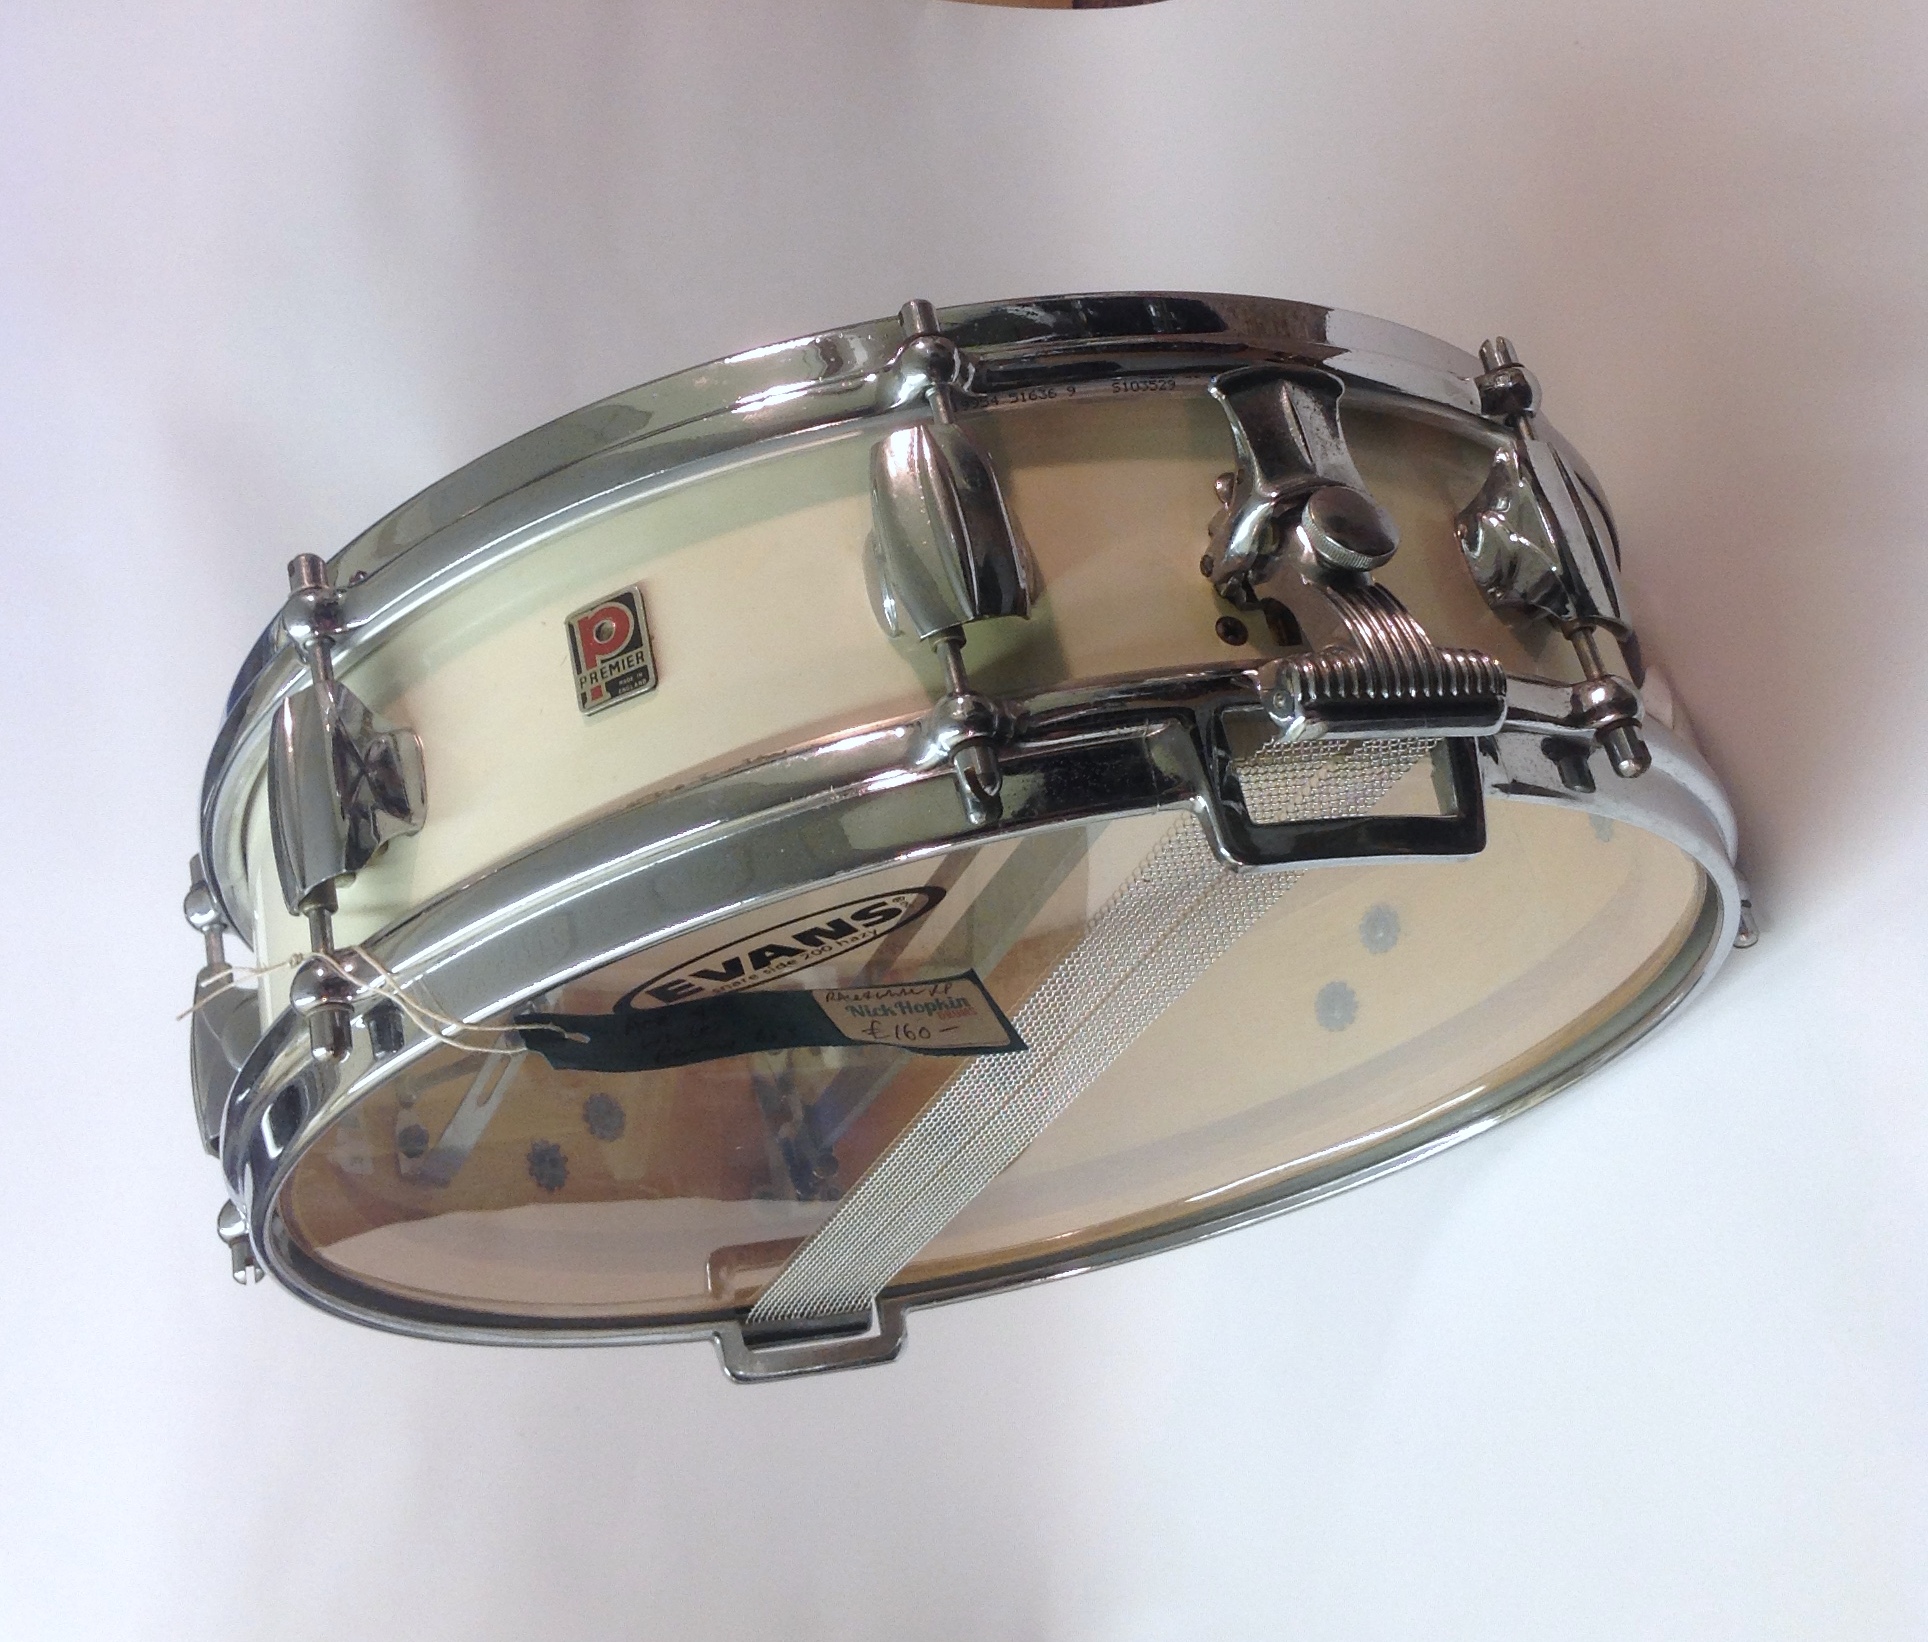 Royal Ace snare drum butt end castings Vintage 1960's Premier x4 